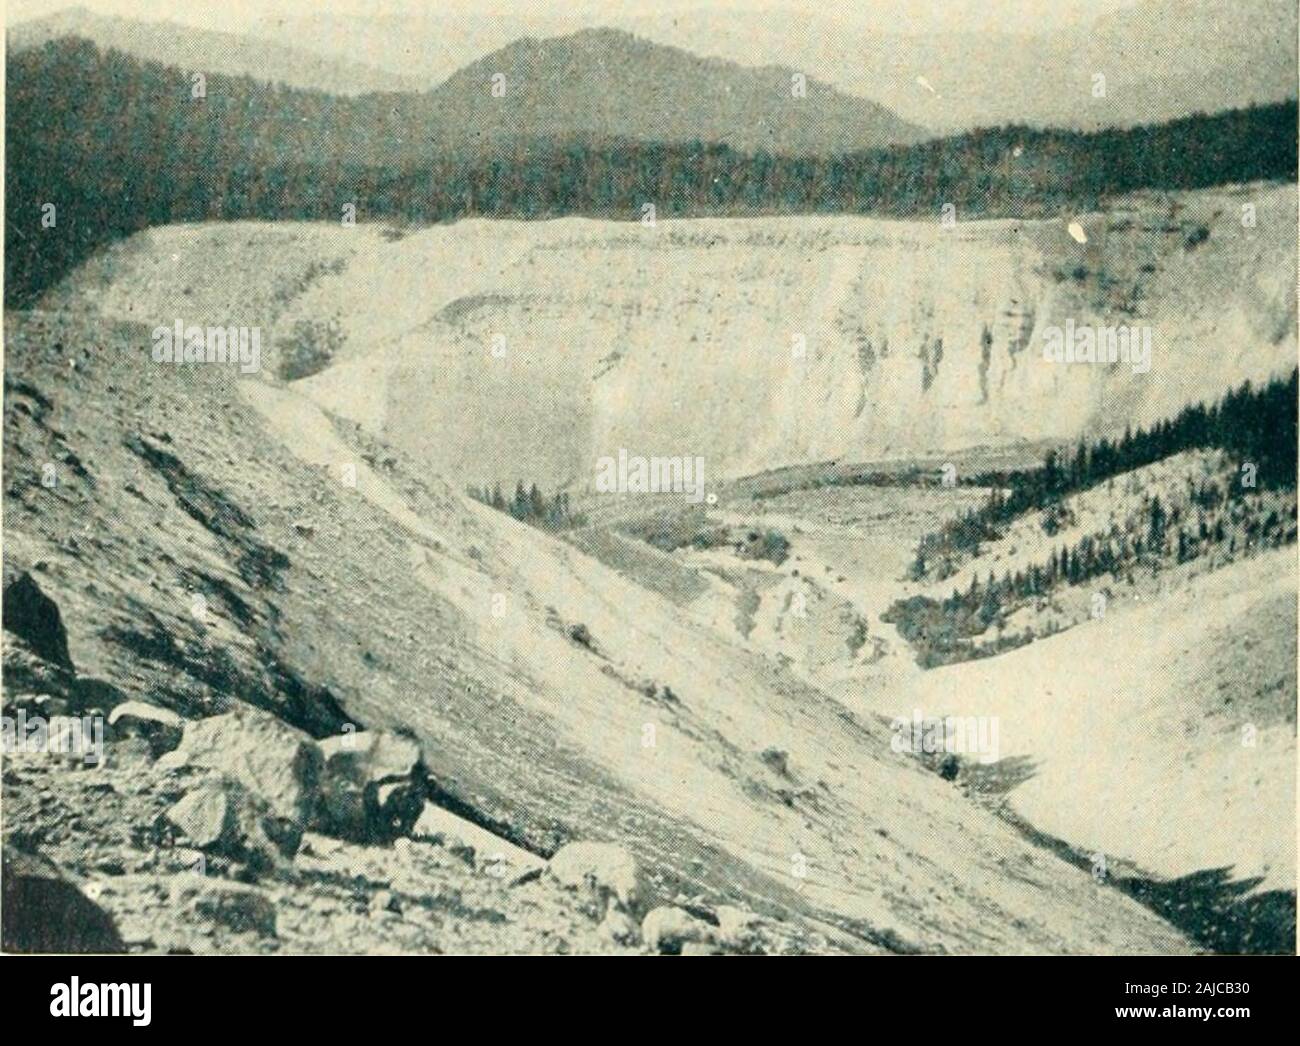 Die wächter der Columbia, Mount Hood, Mount Adams und Mount St. Helens. e von St. Helens. Diese riesige Gräben im weichen Bimsstein showby Ihre V-Form, dass Sie durch die Bäche haben von den Gletschern oben, statt nach theglaciers selbst, die, auf diesem jungen Peak, wahrscheinlich noch nie eine viel grössere Ausdehnung hatte. Nachweis der letzten Aktivität in beiden Krater auf der nortli Steigung und photographeda Neugierig diagonal Moraine, als regelmässiger Form als Bahndamm, an die Grenze Moränen eines kleinen Gletscher verbunden. Der Nordseite hassince gesehen häufige Aufstiege. Die mazamas, wh Stockfoto